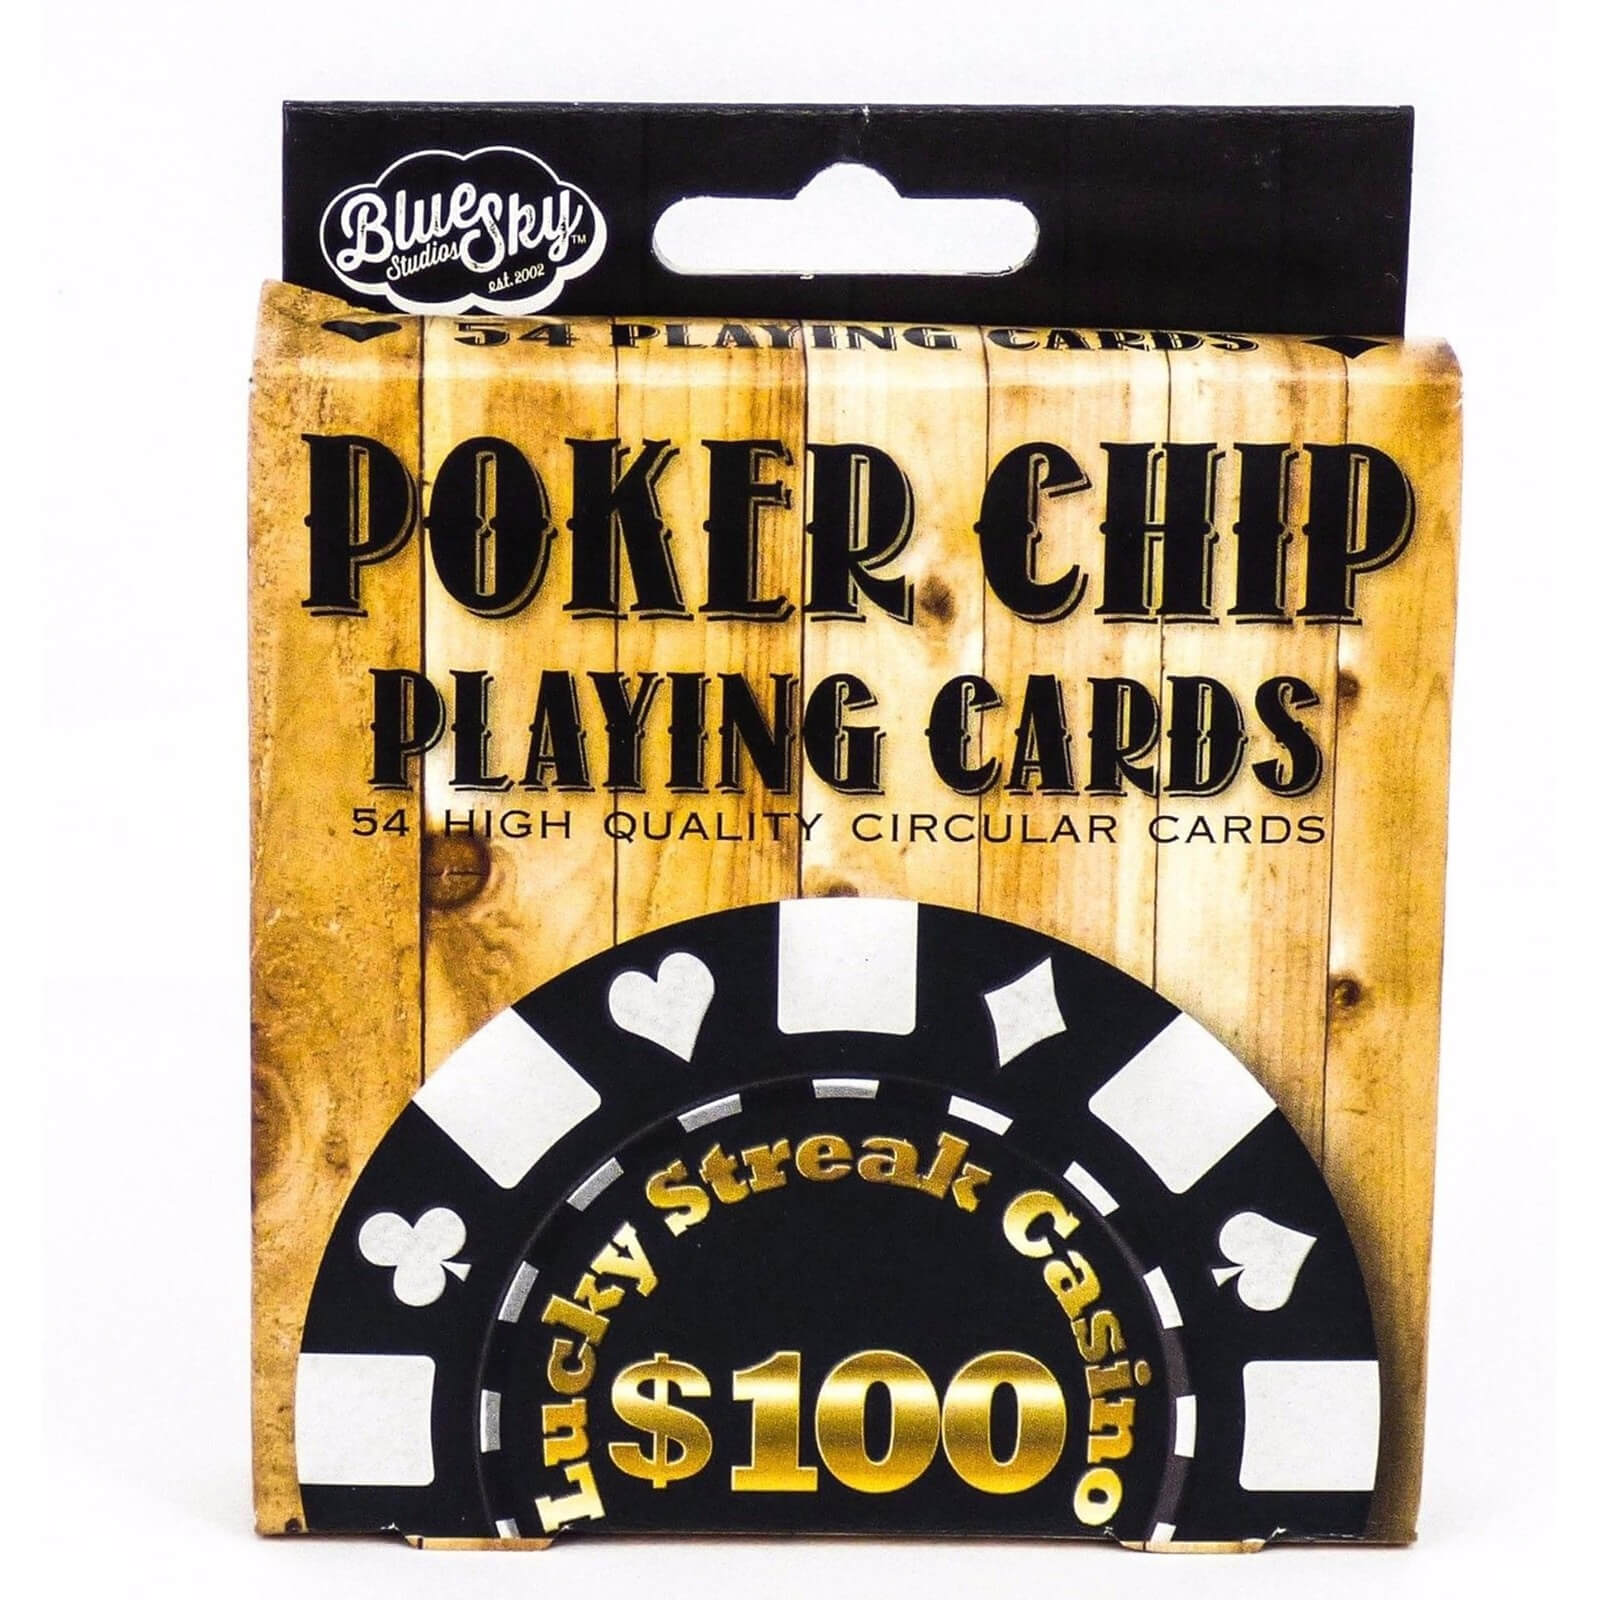 Poker Chip Circular Playing Cards